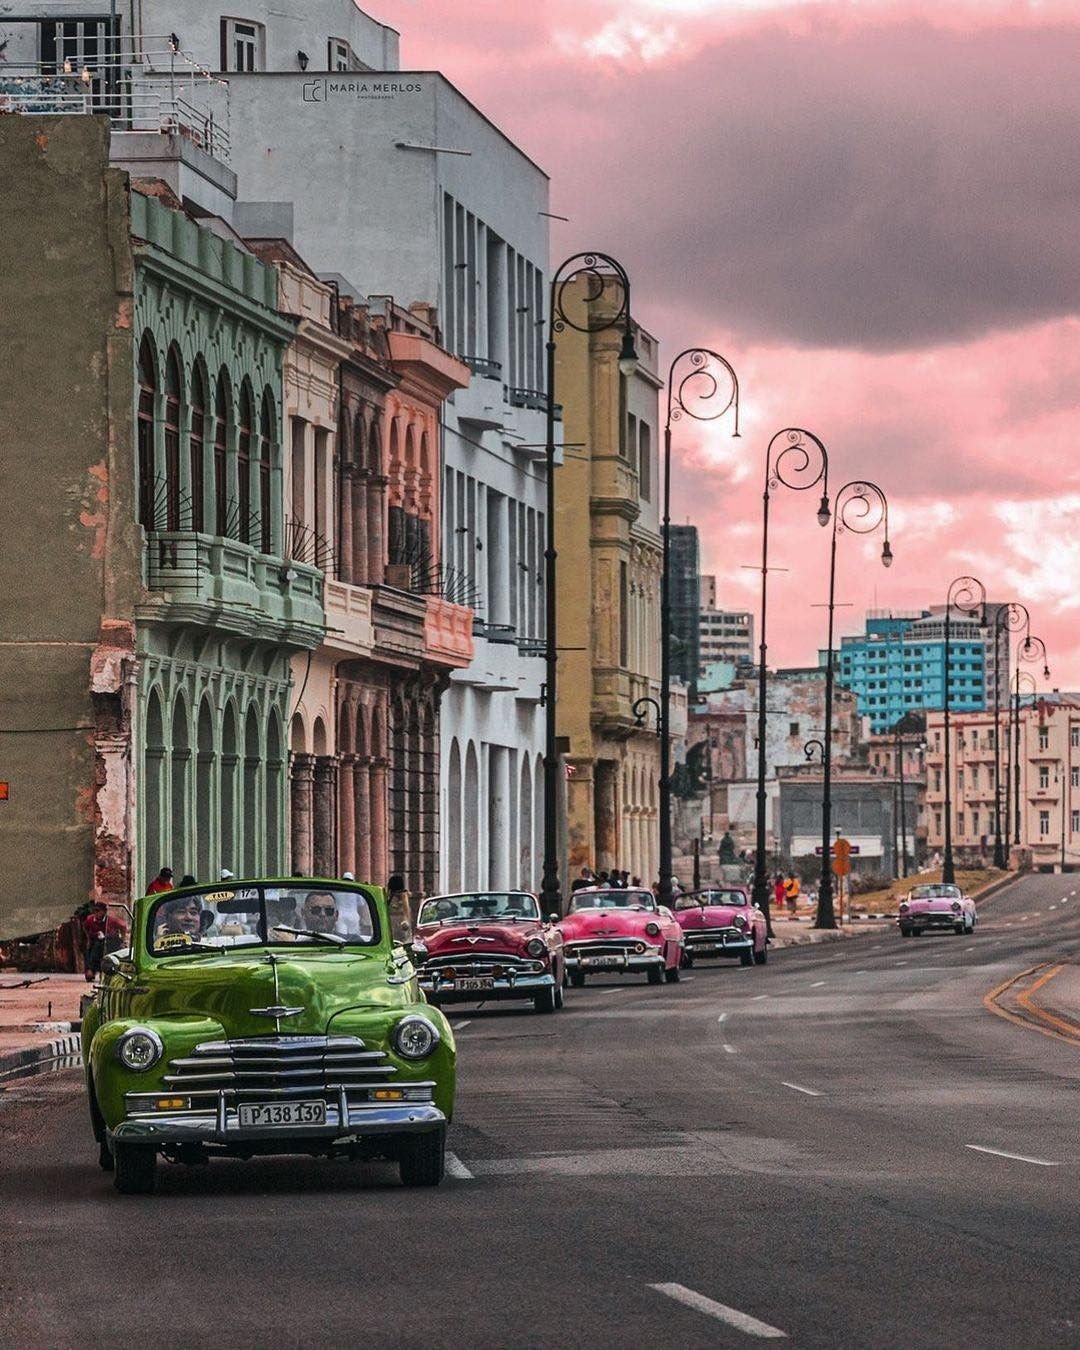 В Гаване много хороших мест, жилье доступное, с радостью поехал бы туда снова, рассказываю, как сейчас живут на Кубе